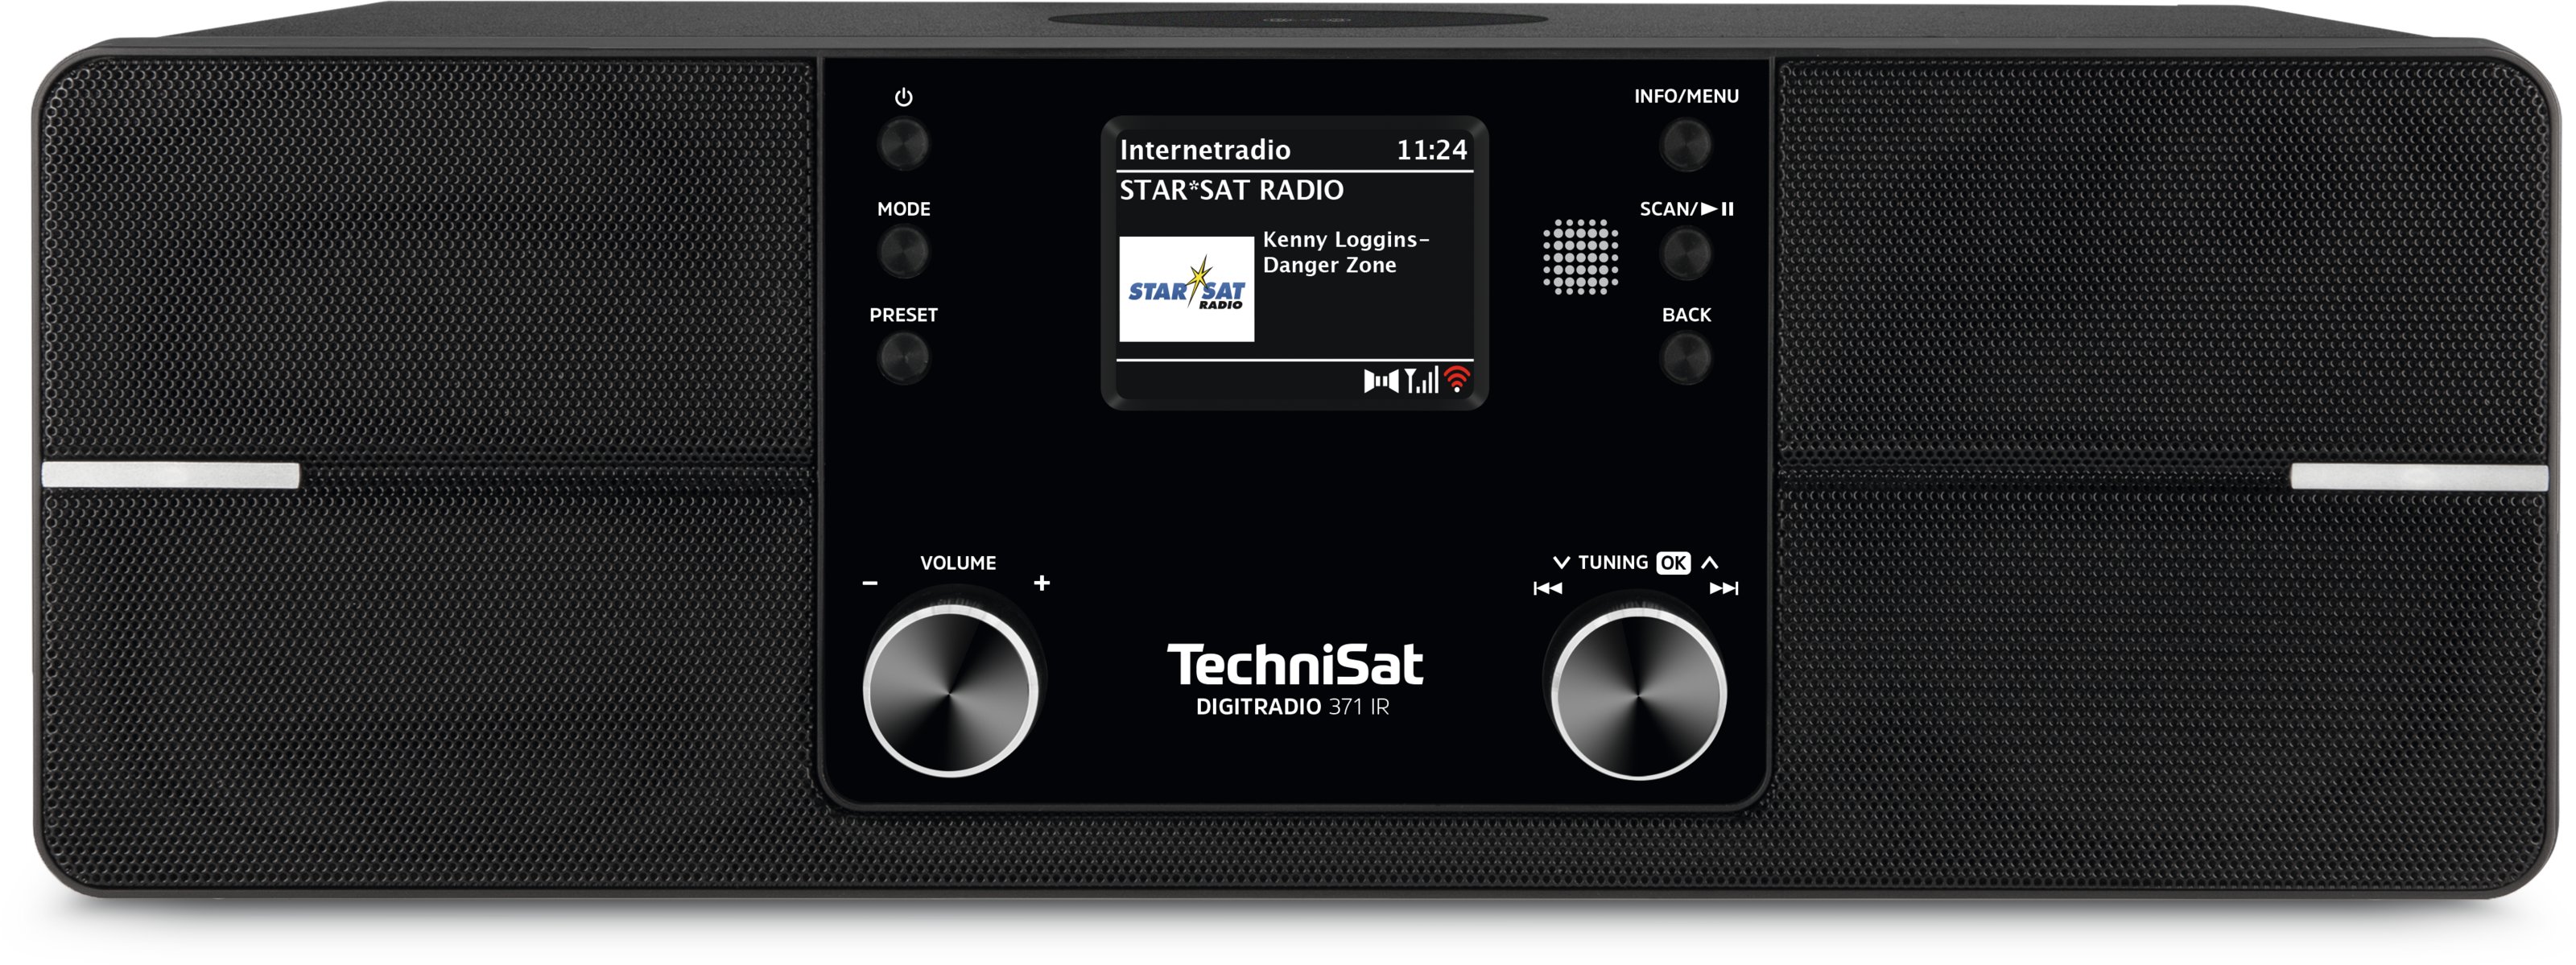 TechniSat DIGITRADIO 371 IR für 124,99 € kaufen | Digital1A